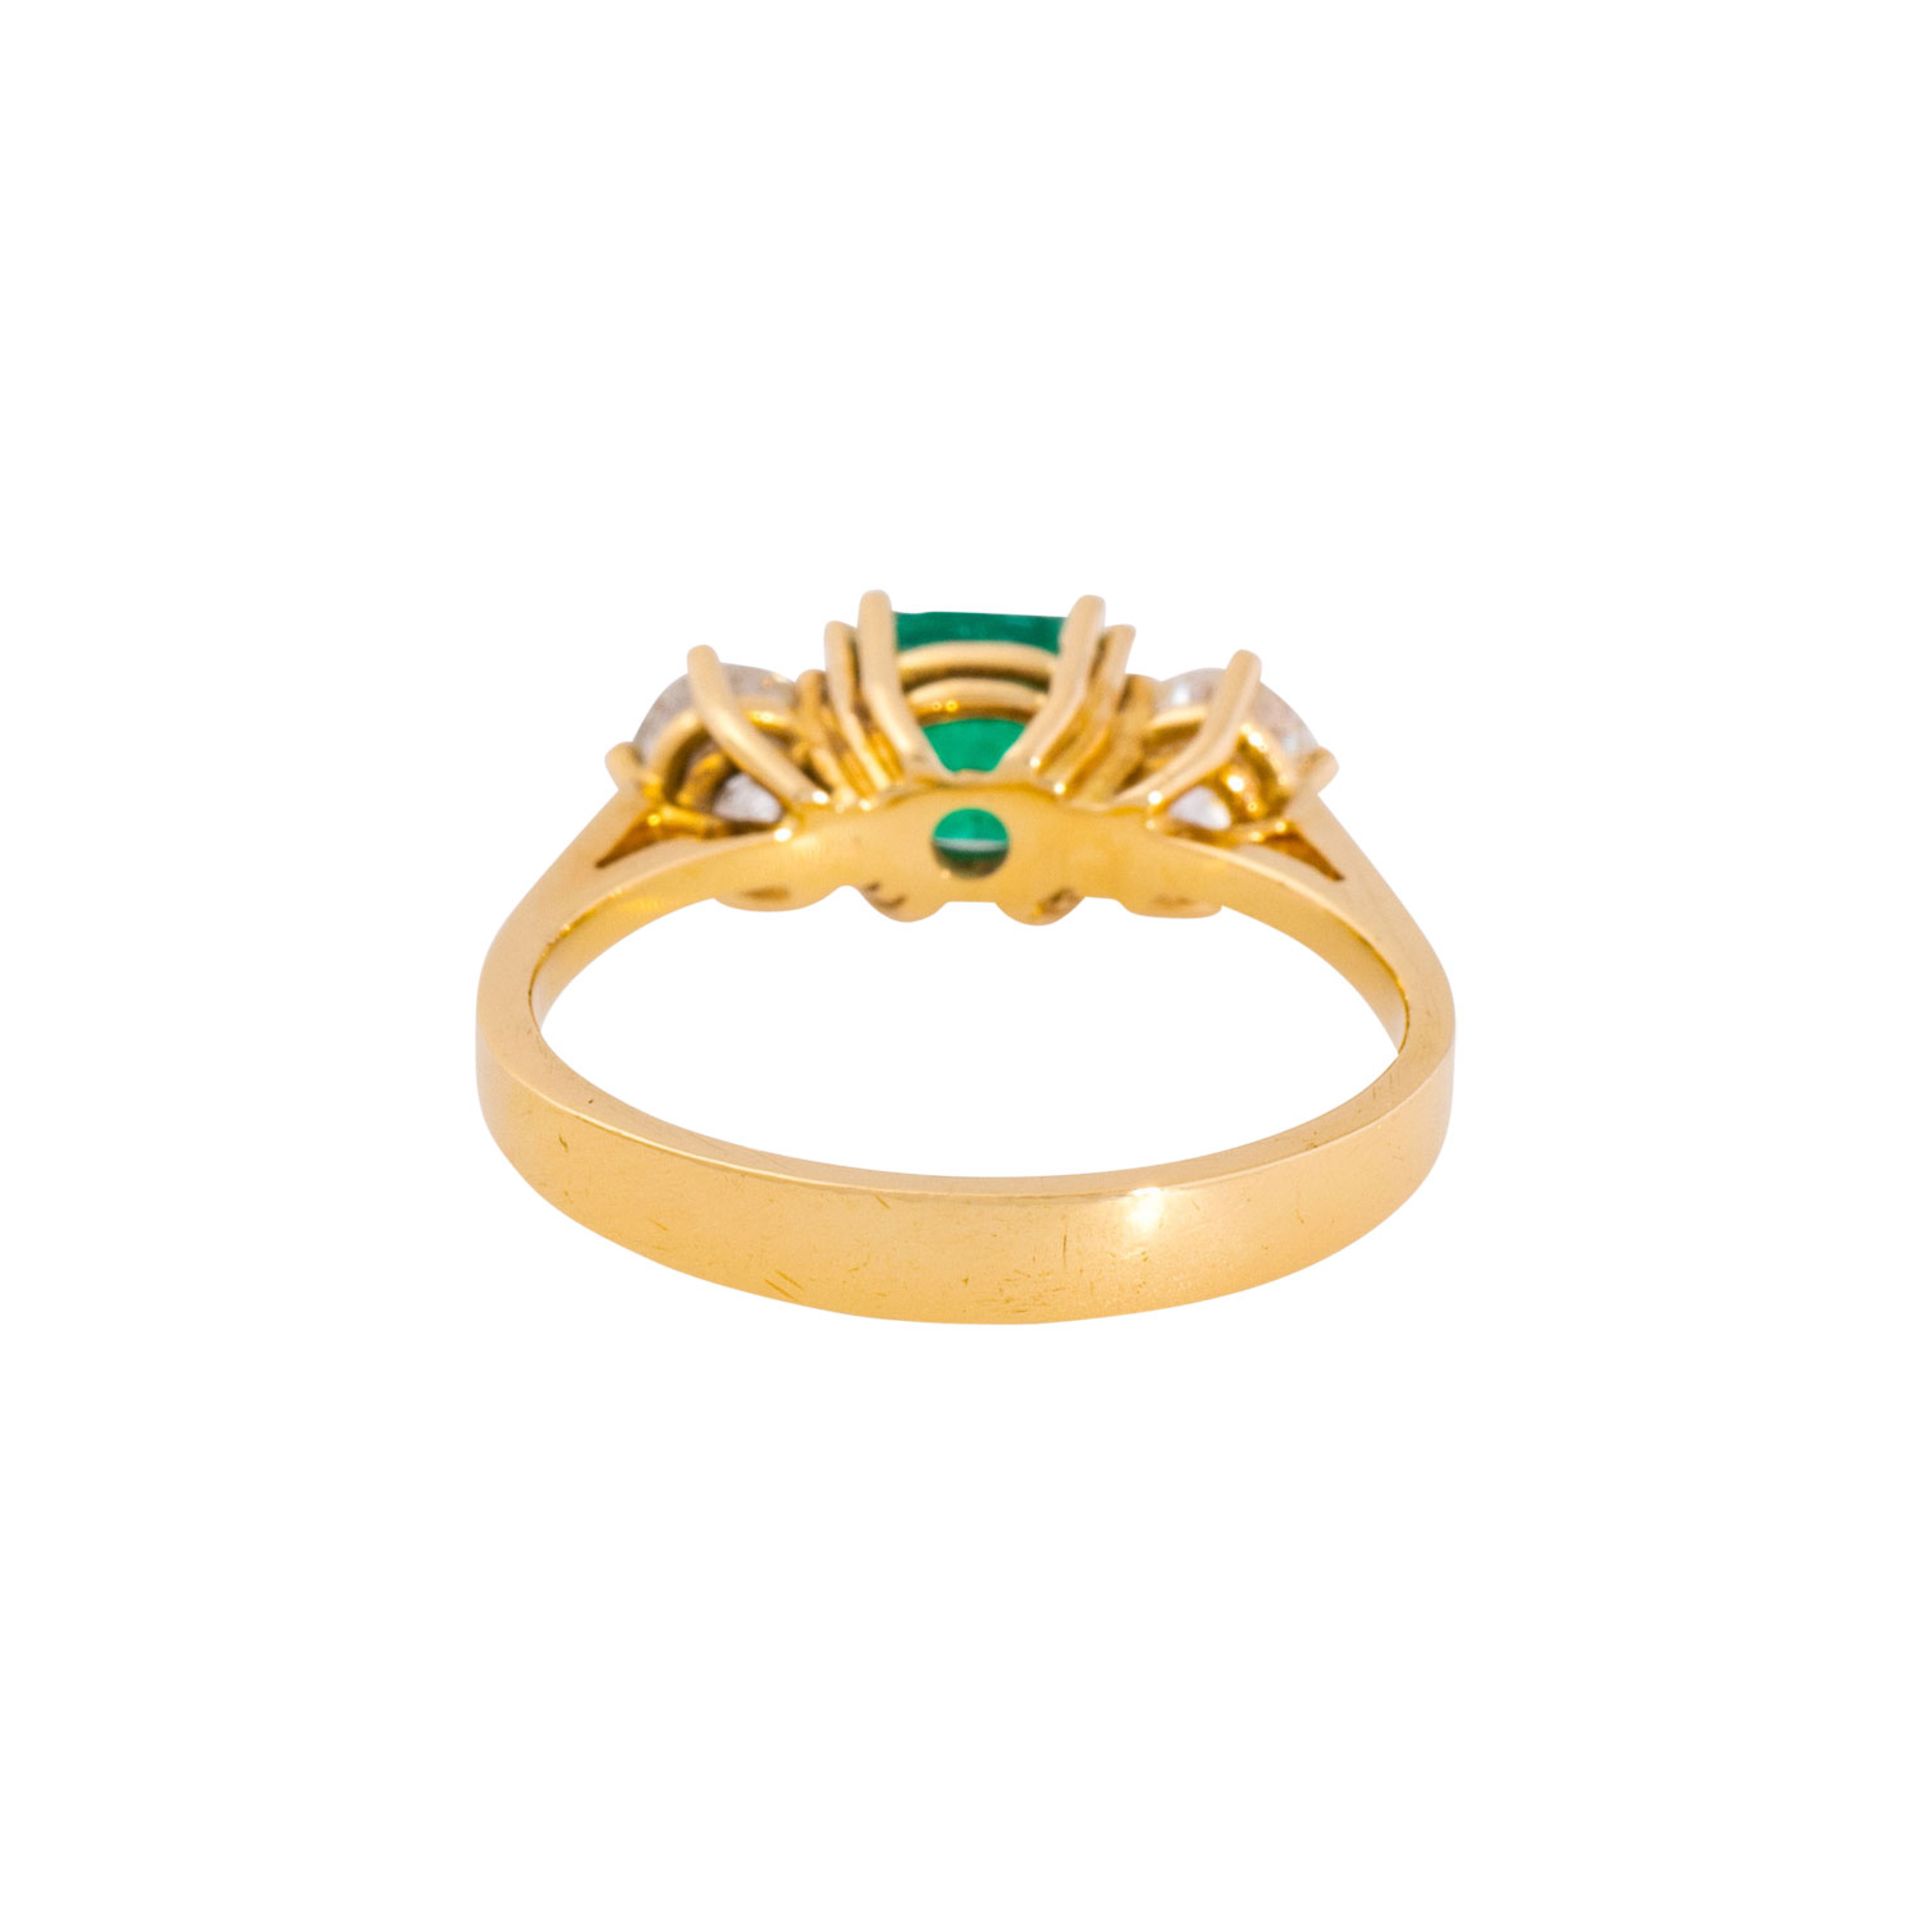 Ring mit Smaragd flankiert von Brillanten zus. ca. 0,39 ct (punziert), - Image 3 of 3